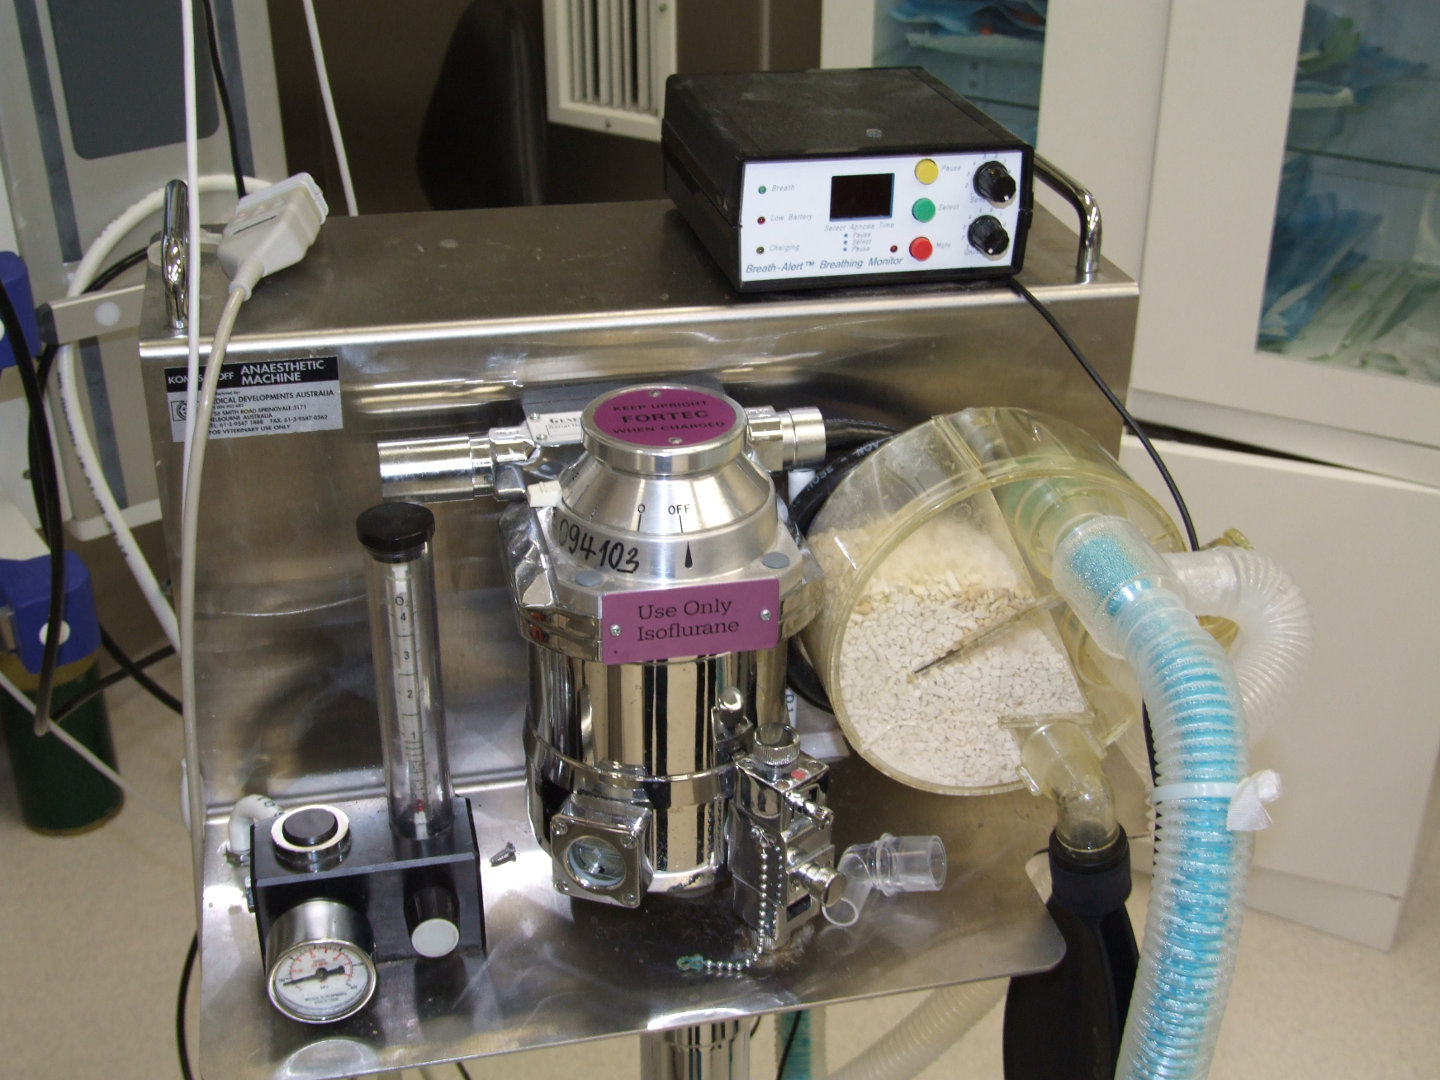 Anaesthetic Machine; Isoflurane vaporisor